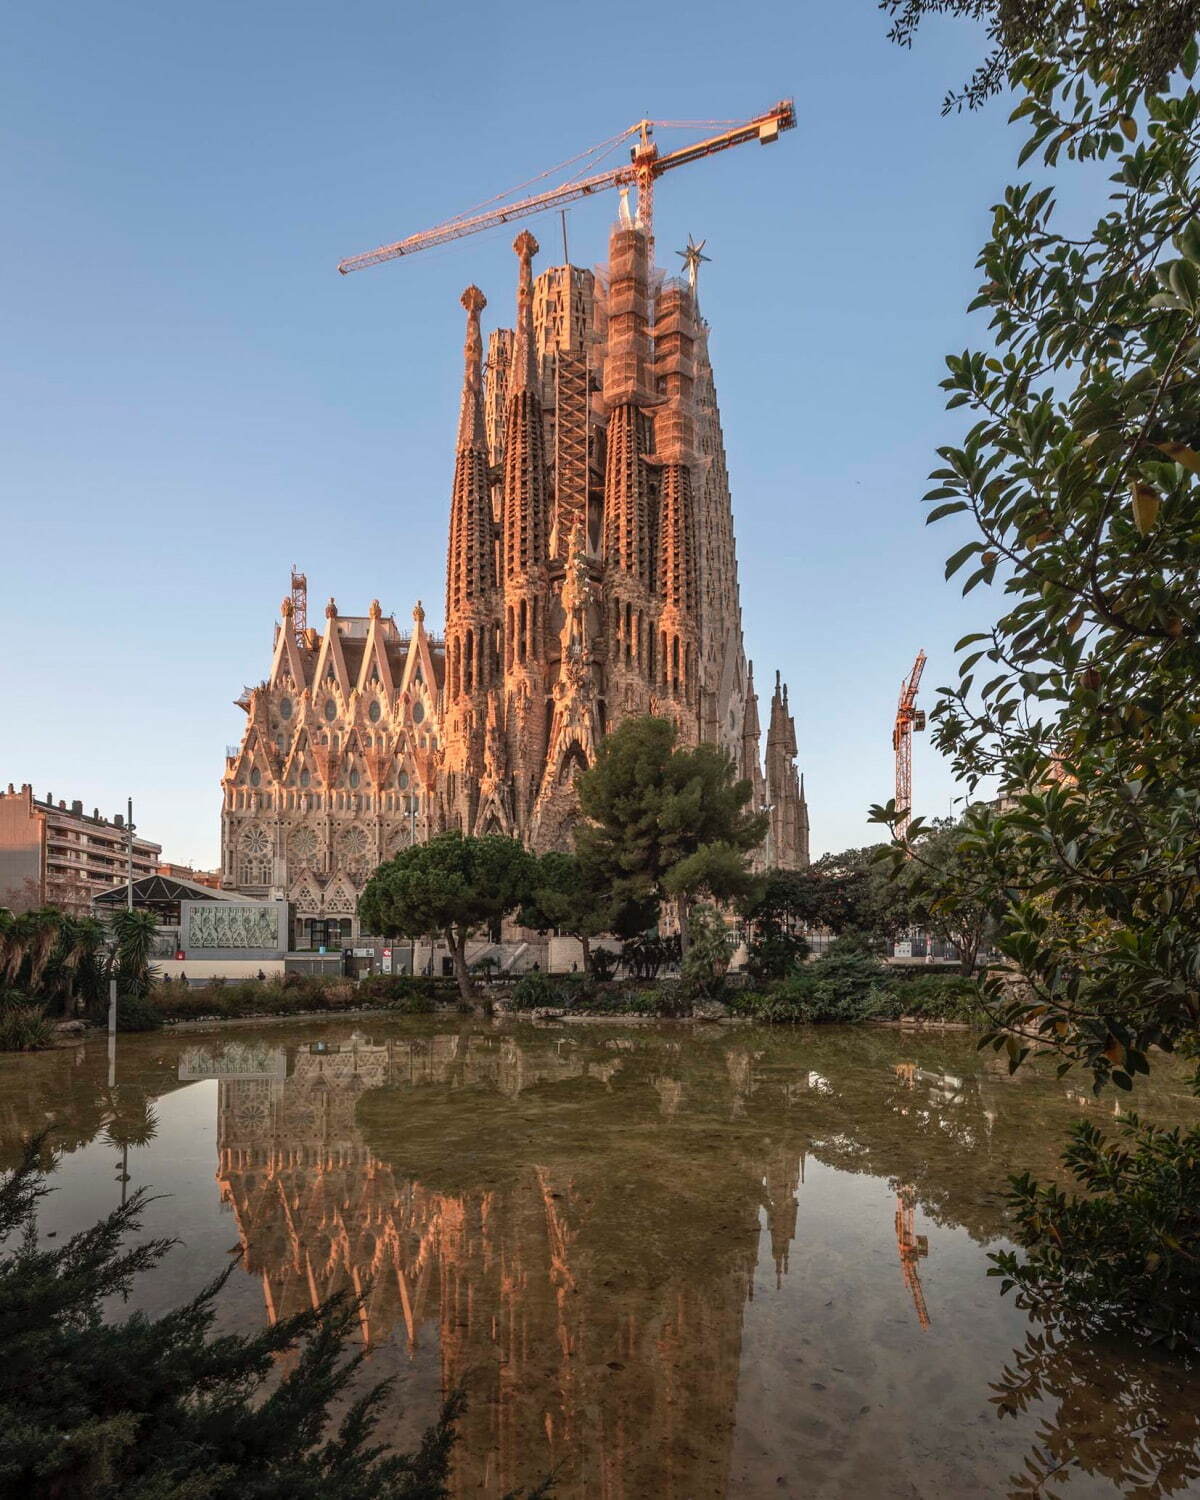 サグラダ・ファミリア聖堂(降誕の正面側)、2023年1月撮影
© Fundació Junta Constructora del Temple Expiatori de la Sagrada Família